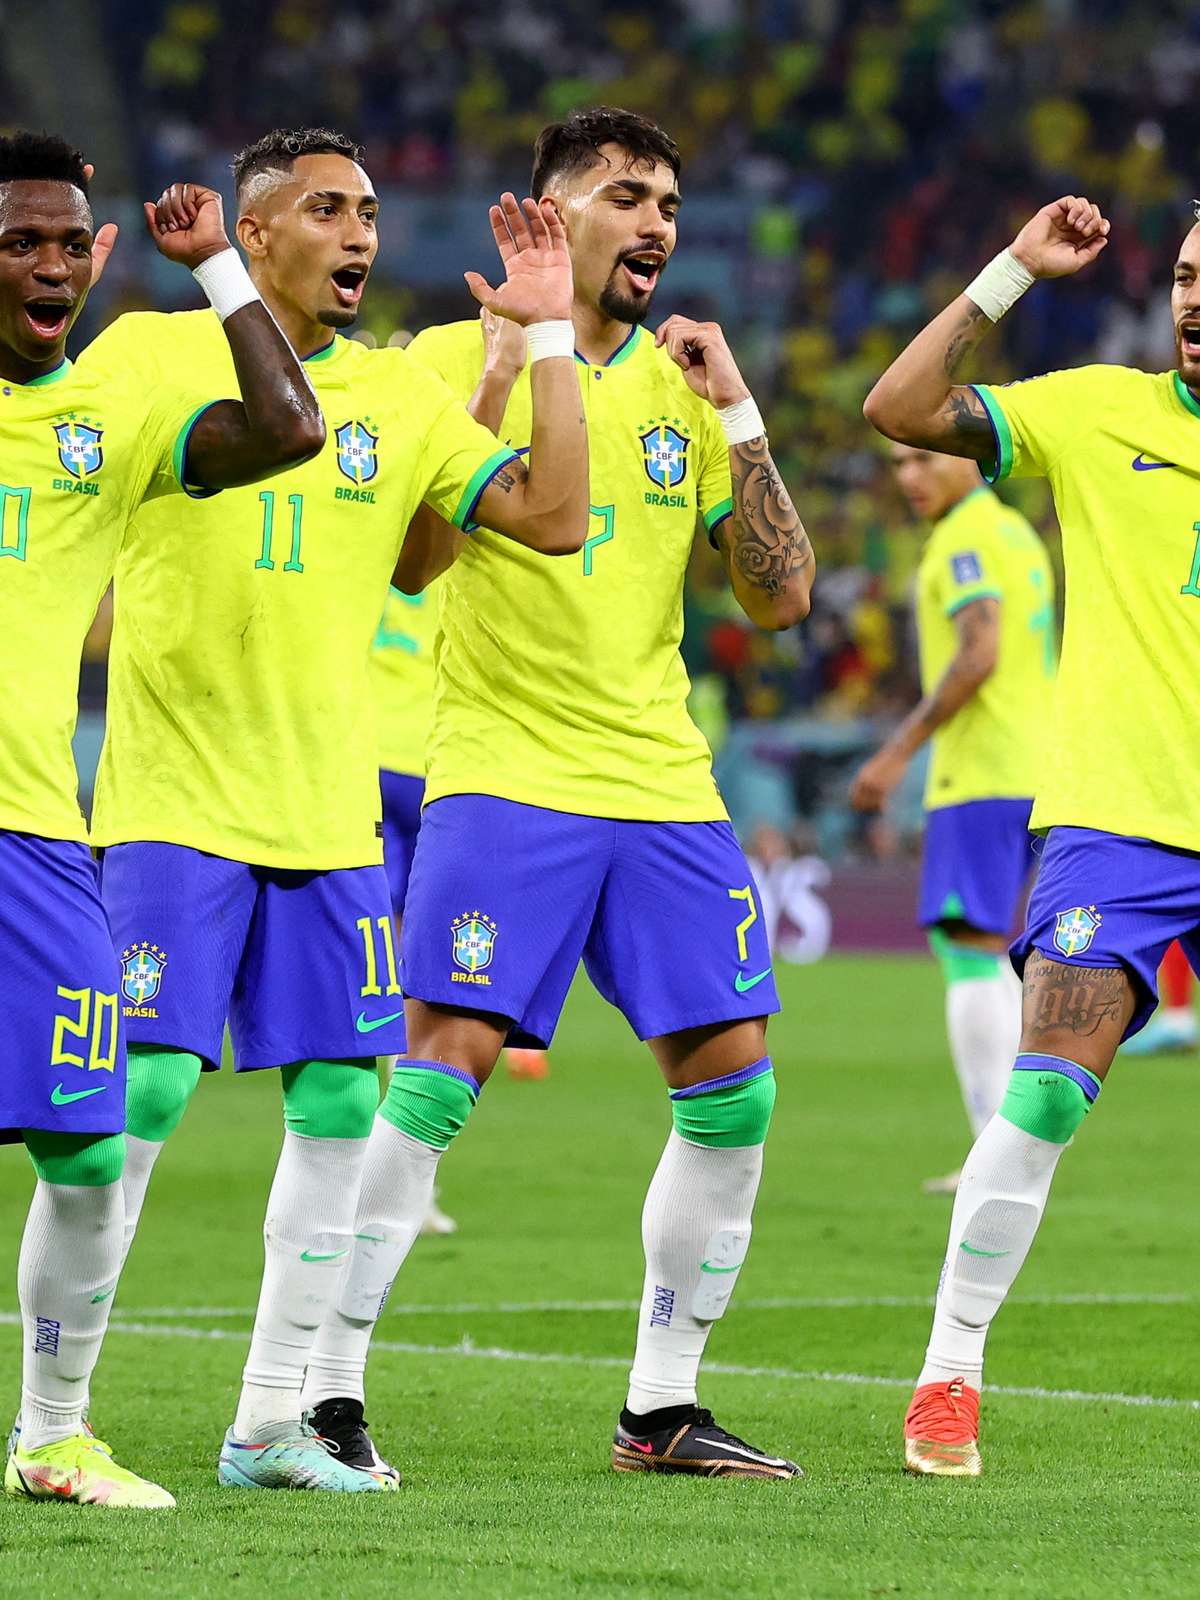 Quando será o próximo jogo do Brasil na Copa do Mundo após vitória contra a  Coreia do Sul?